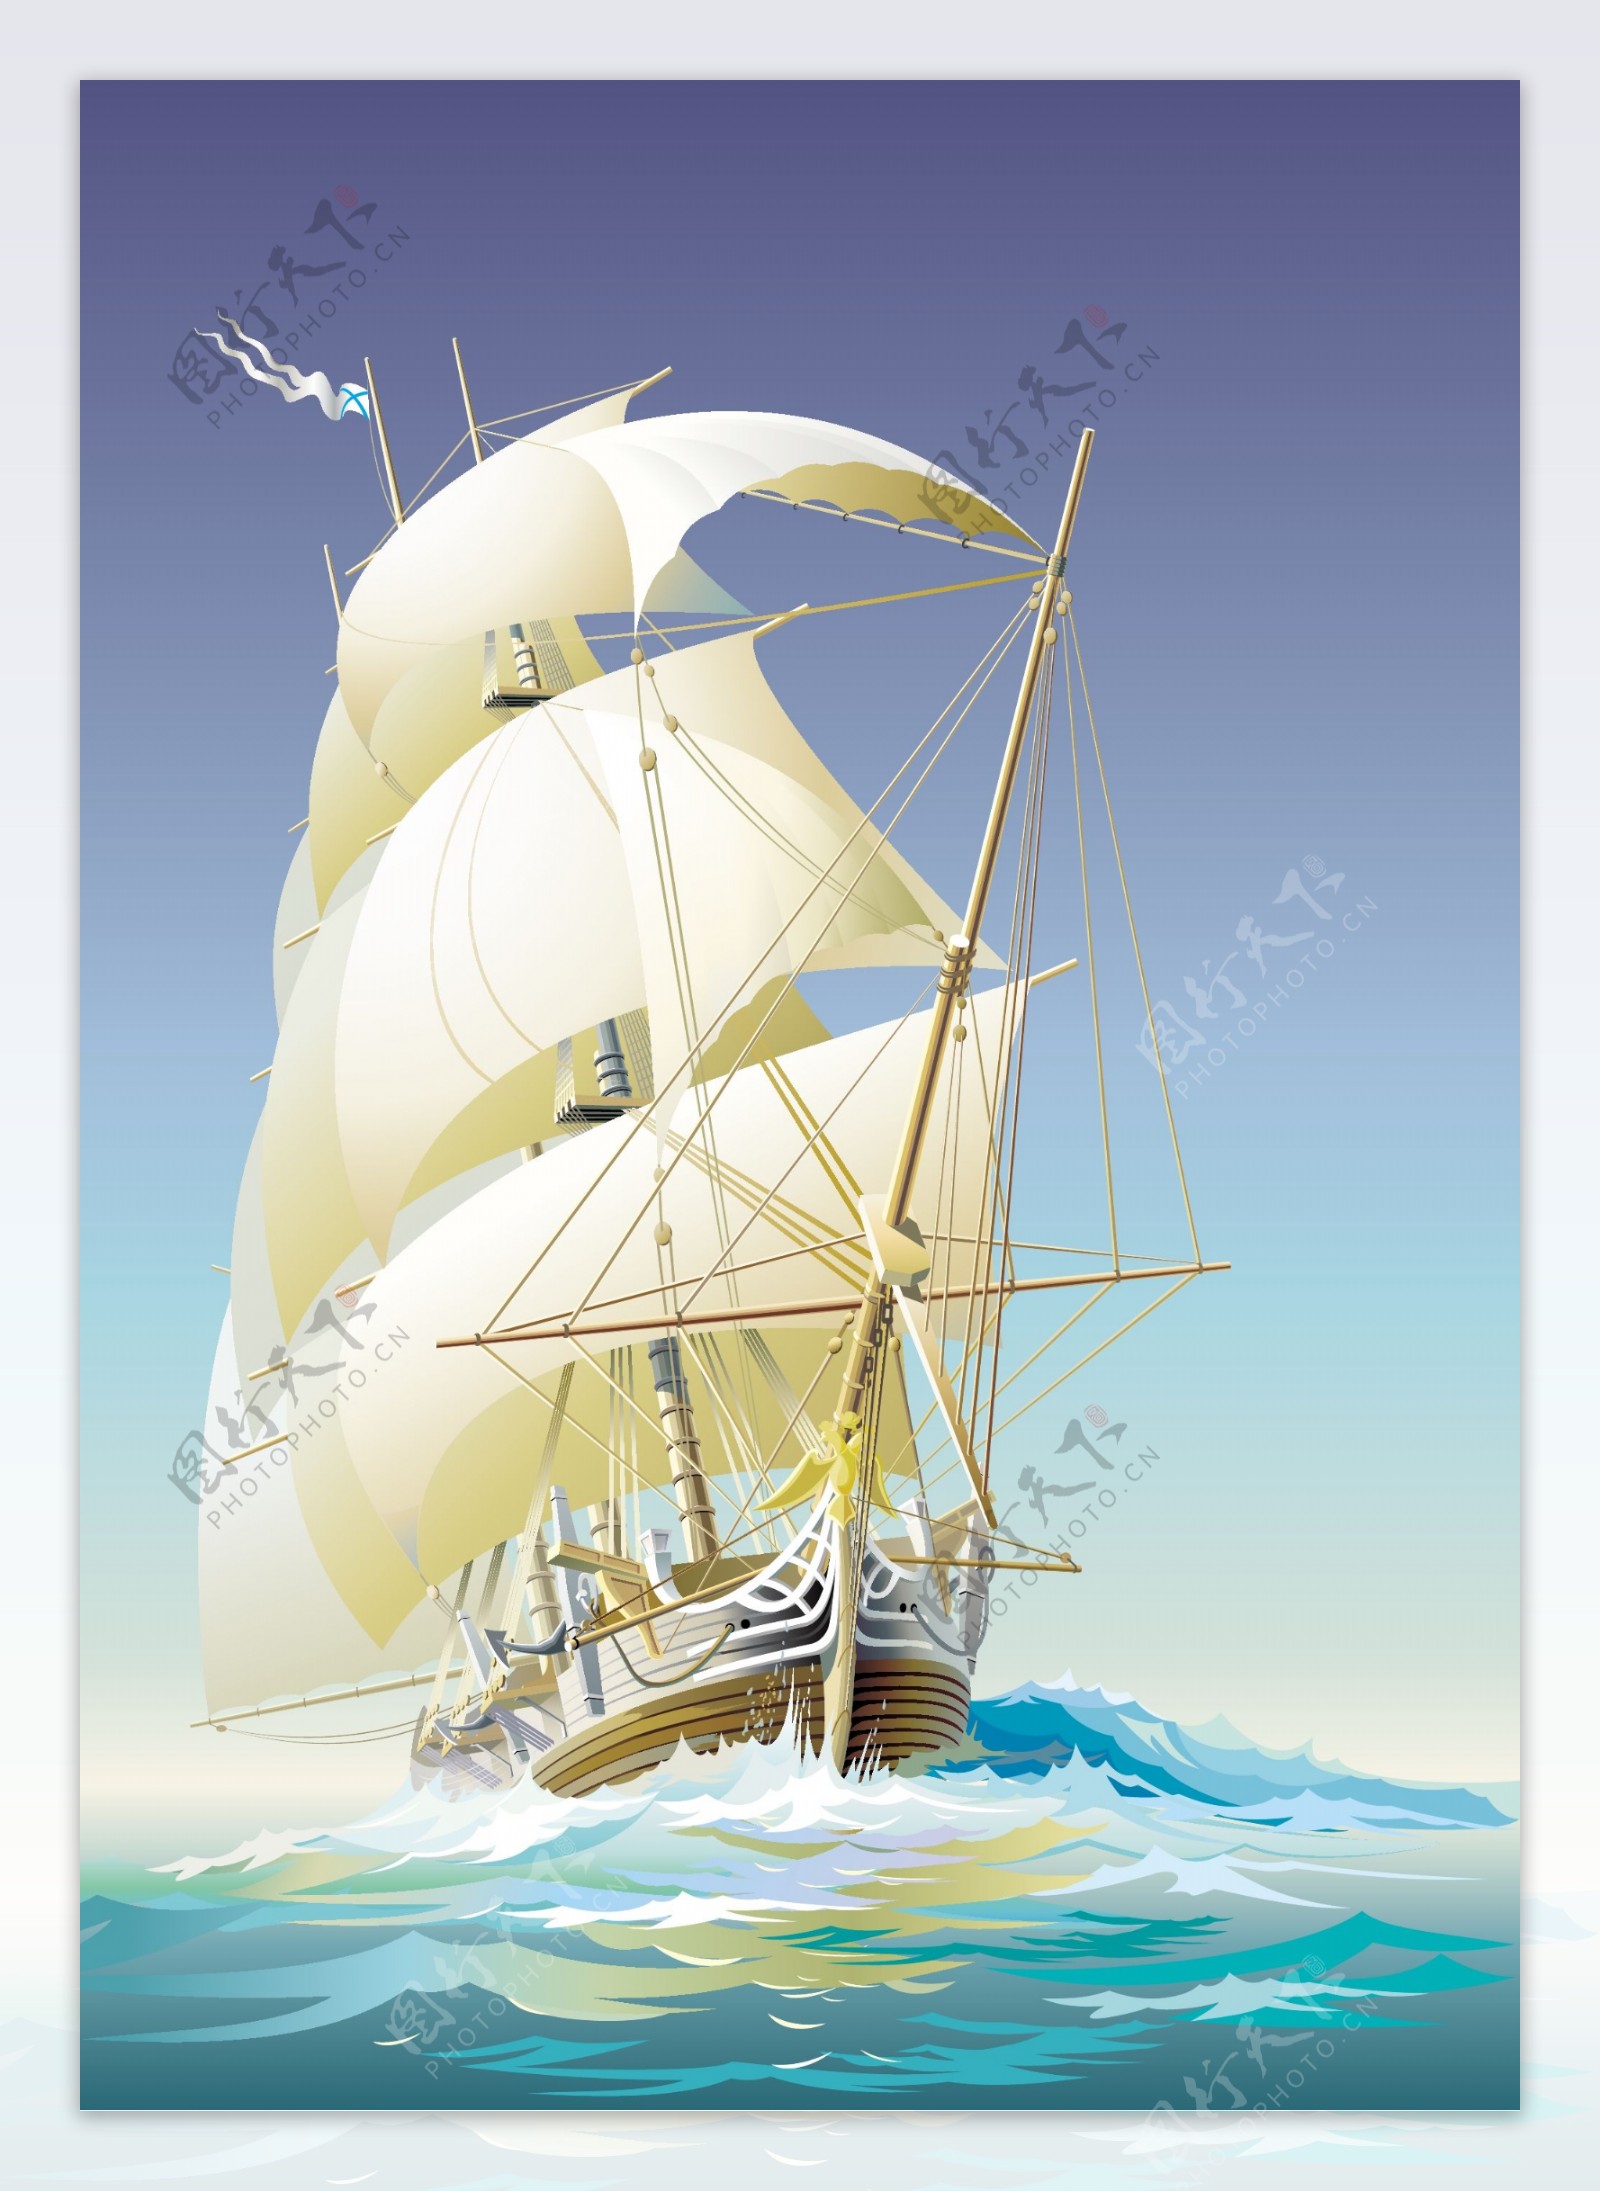 矢量手绘帆船素材图片